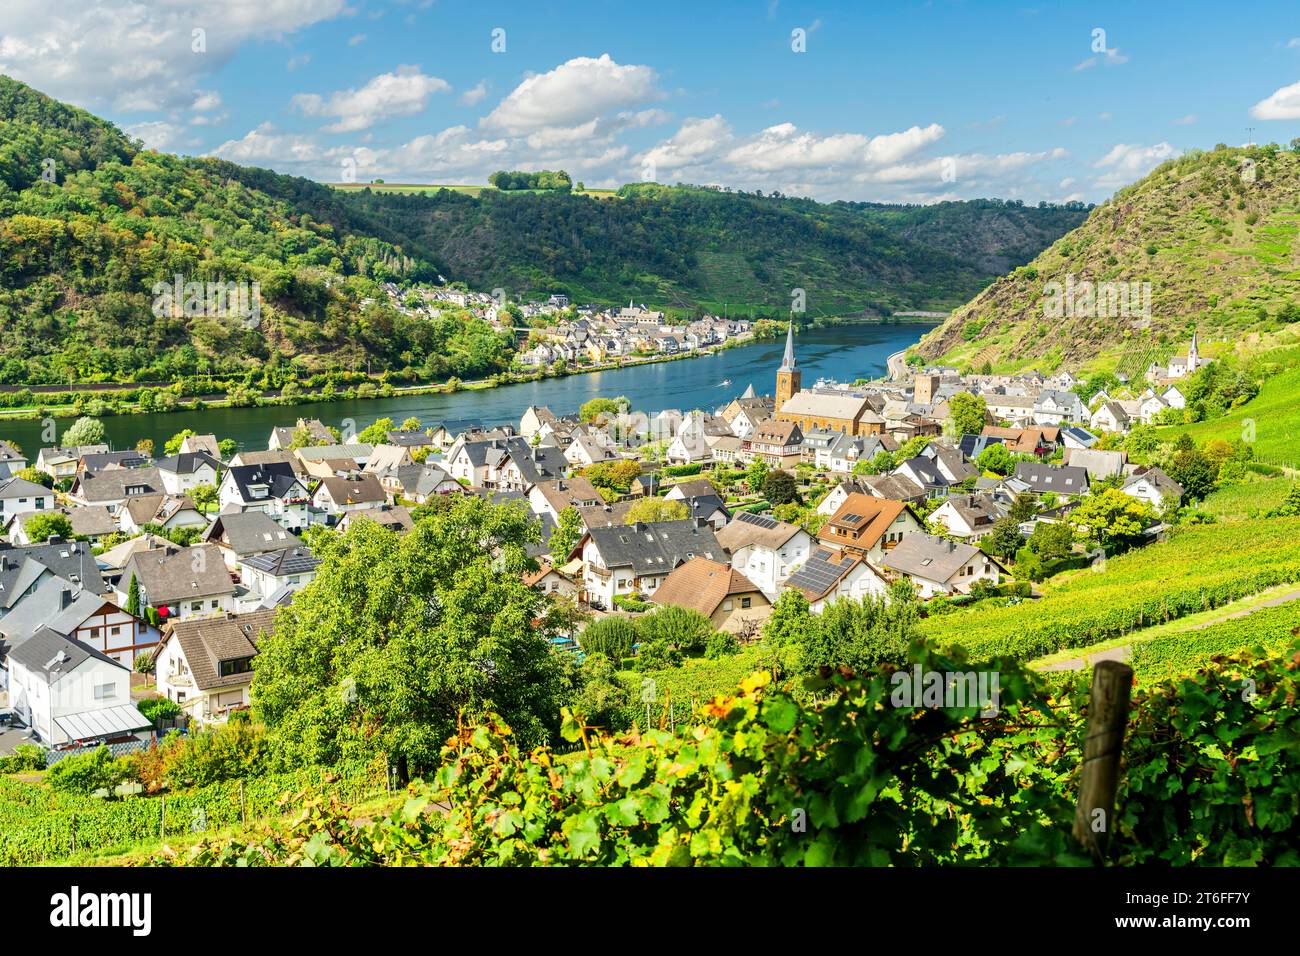 Vista sulla città di Alken, sulla valle della Mosella con il fiume Mosella, sulla Renania Palatinato, Germania Foto Stock